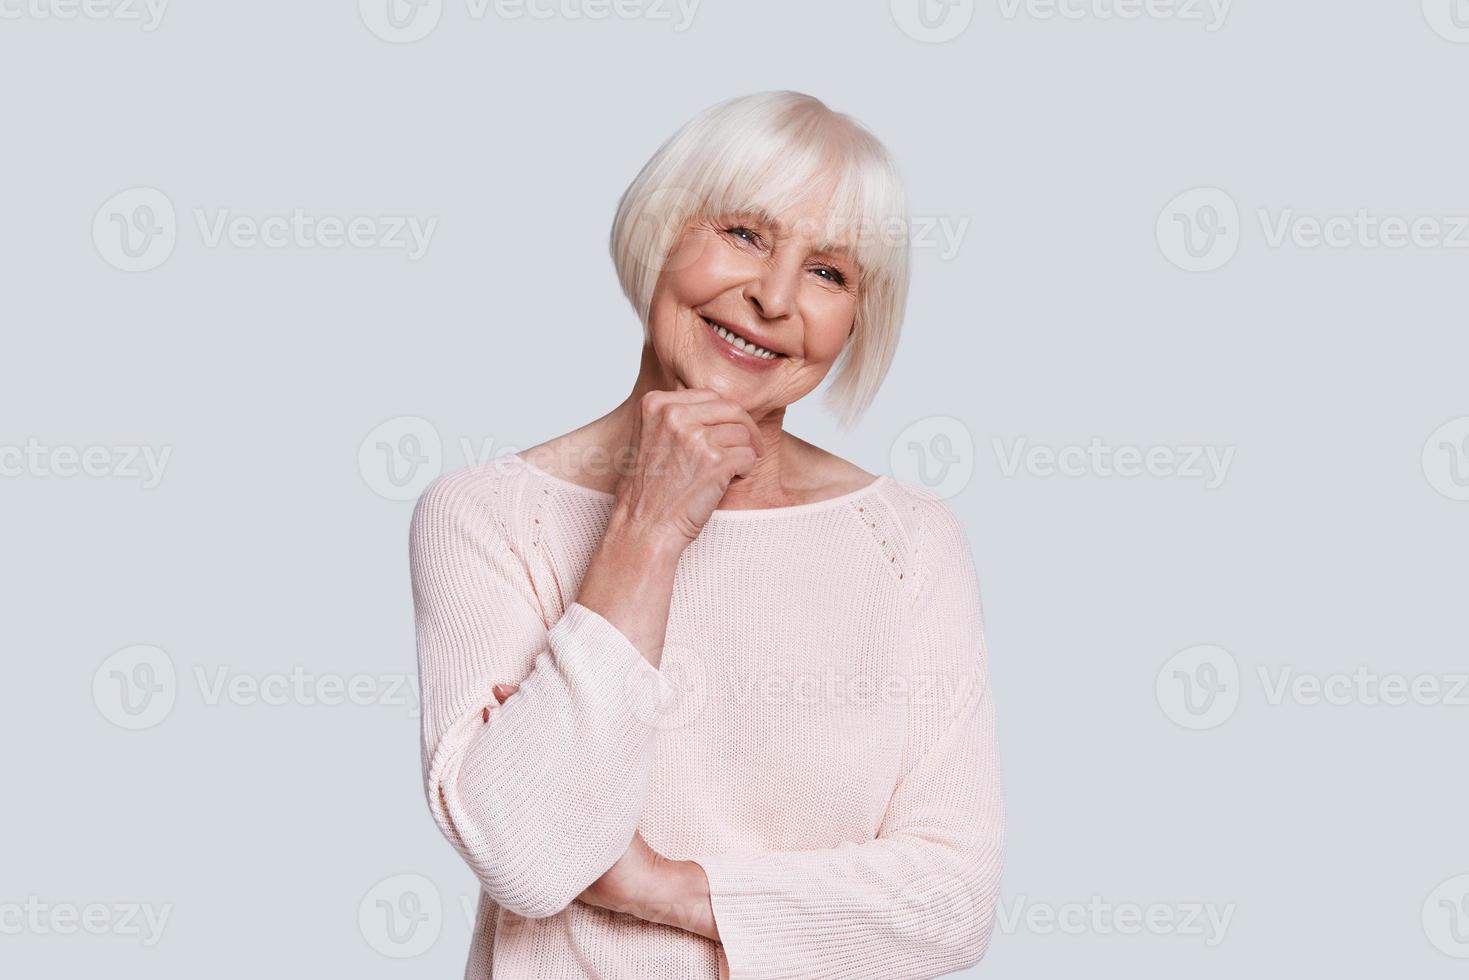 vraie beauté féminine. belle femme âgée gardant la main sur le menton et souriant en se tenant debout sur fond gris photo